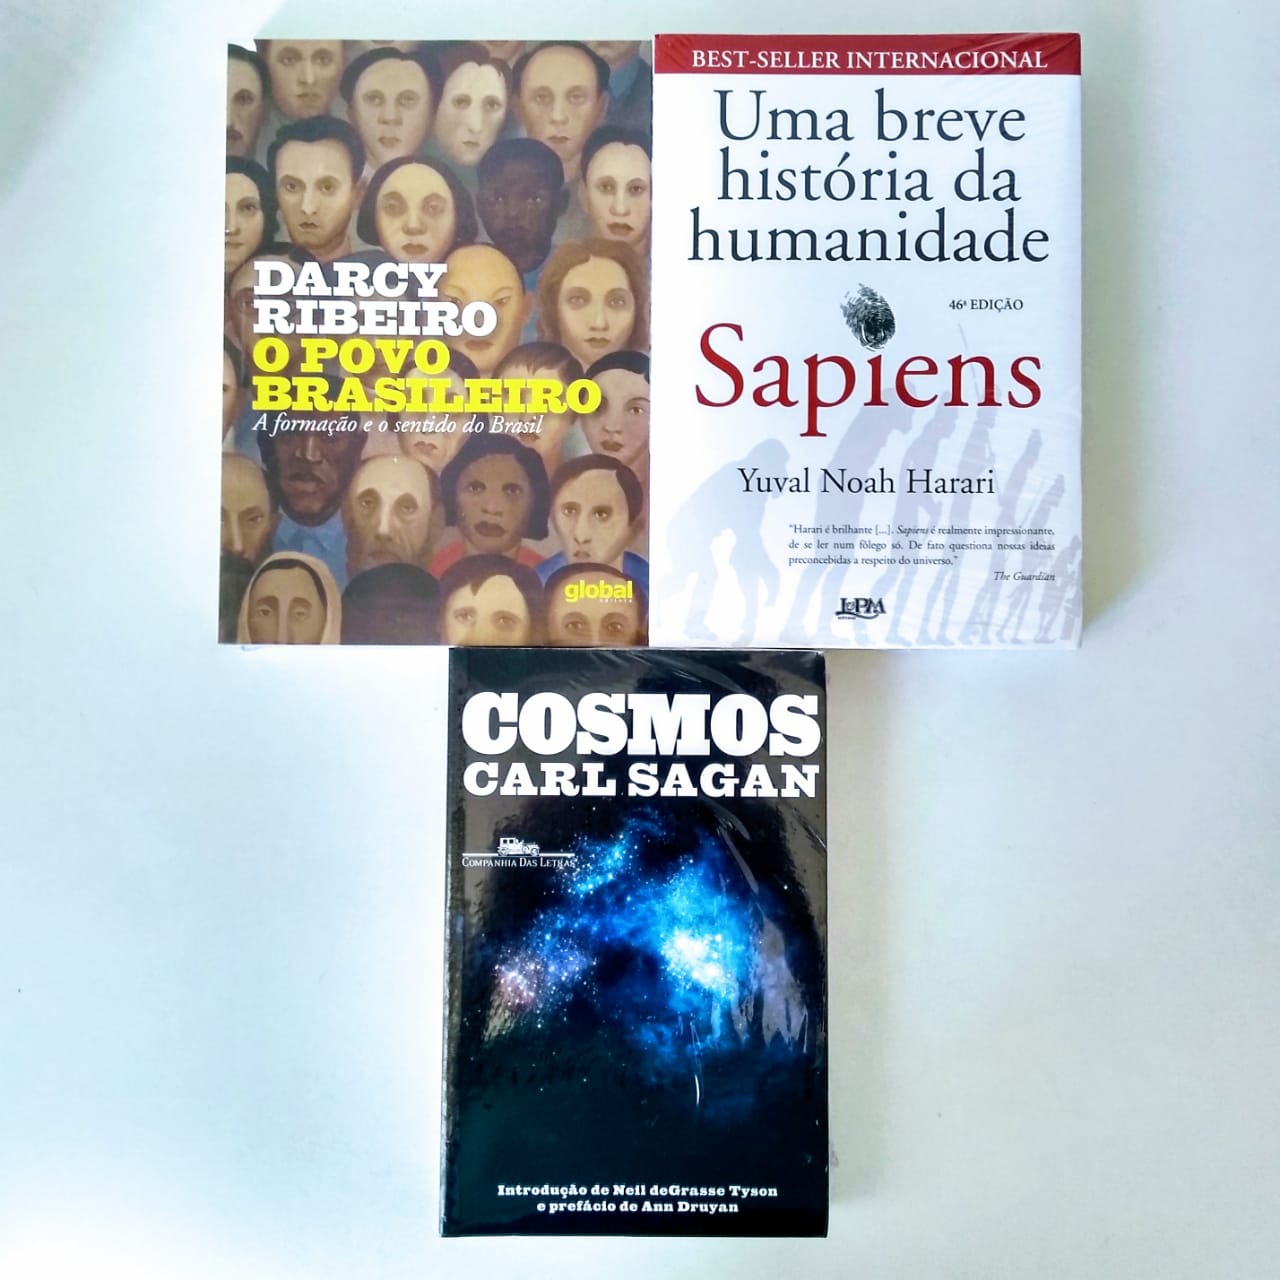 Filme “O Jogo da Imitação” – Bibliotecas do Maranhão